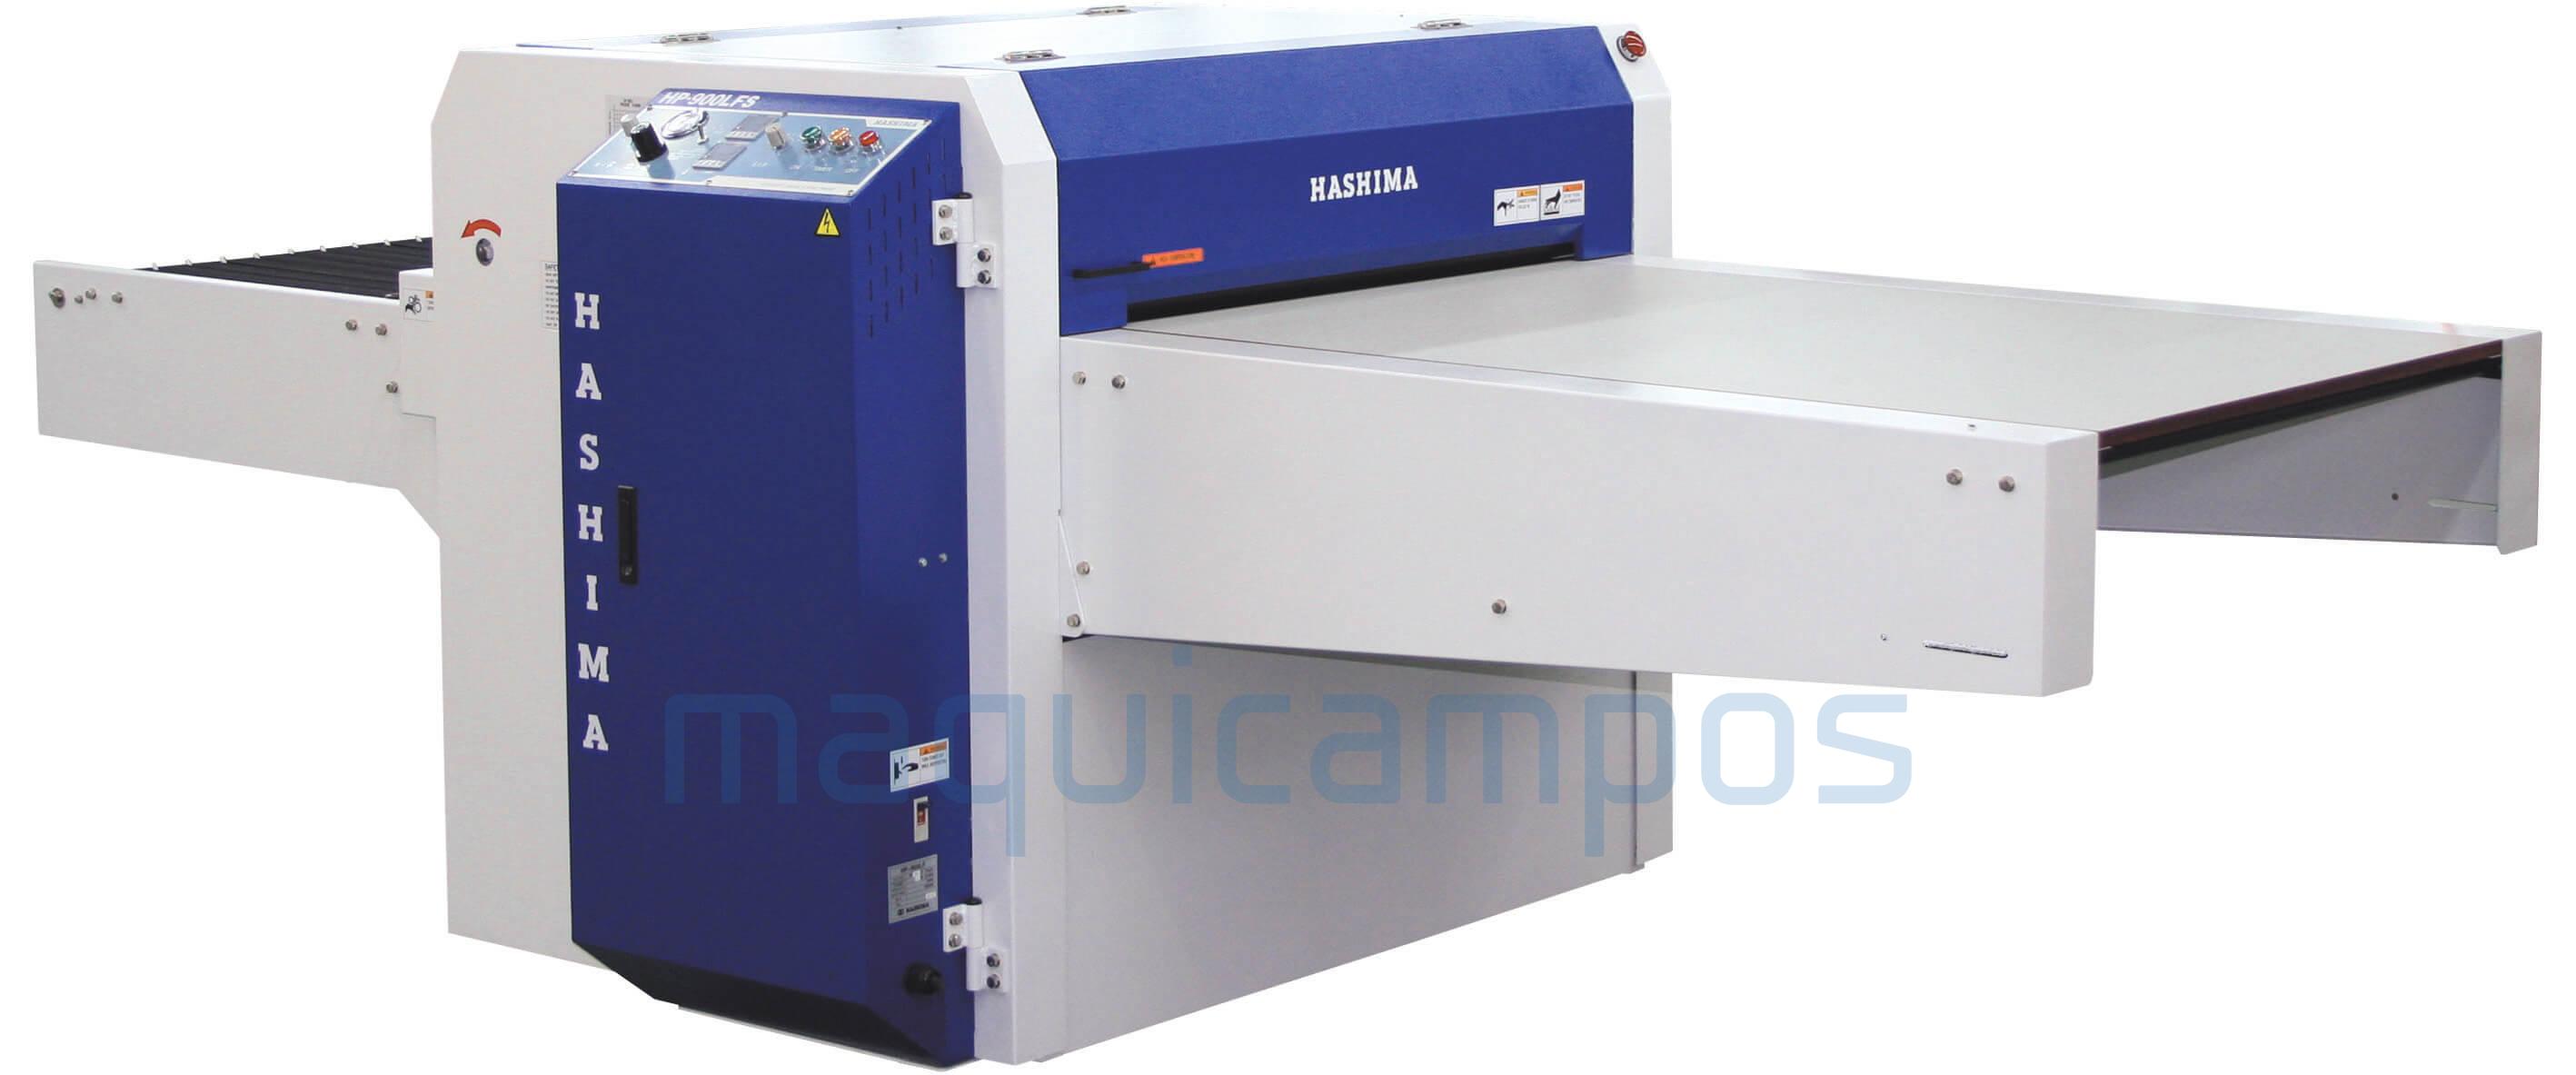 Hashima HP-900LFS Press Fusing Machine